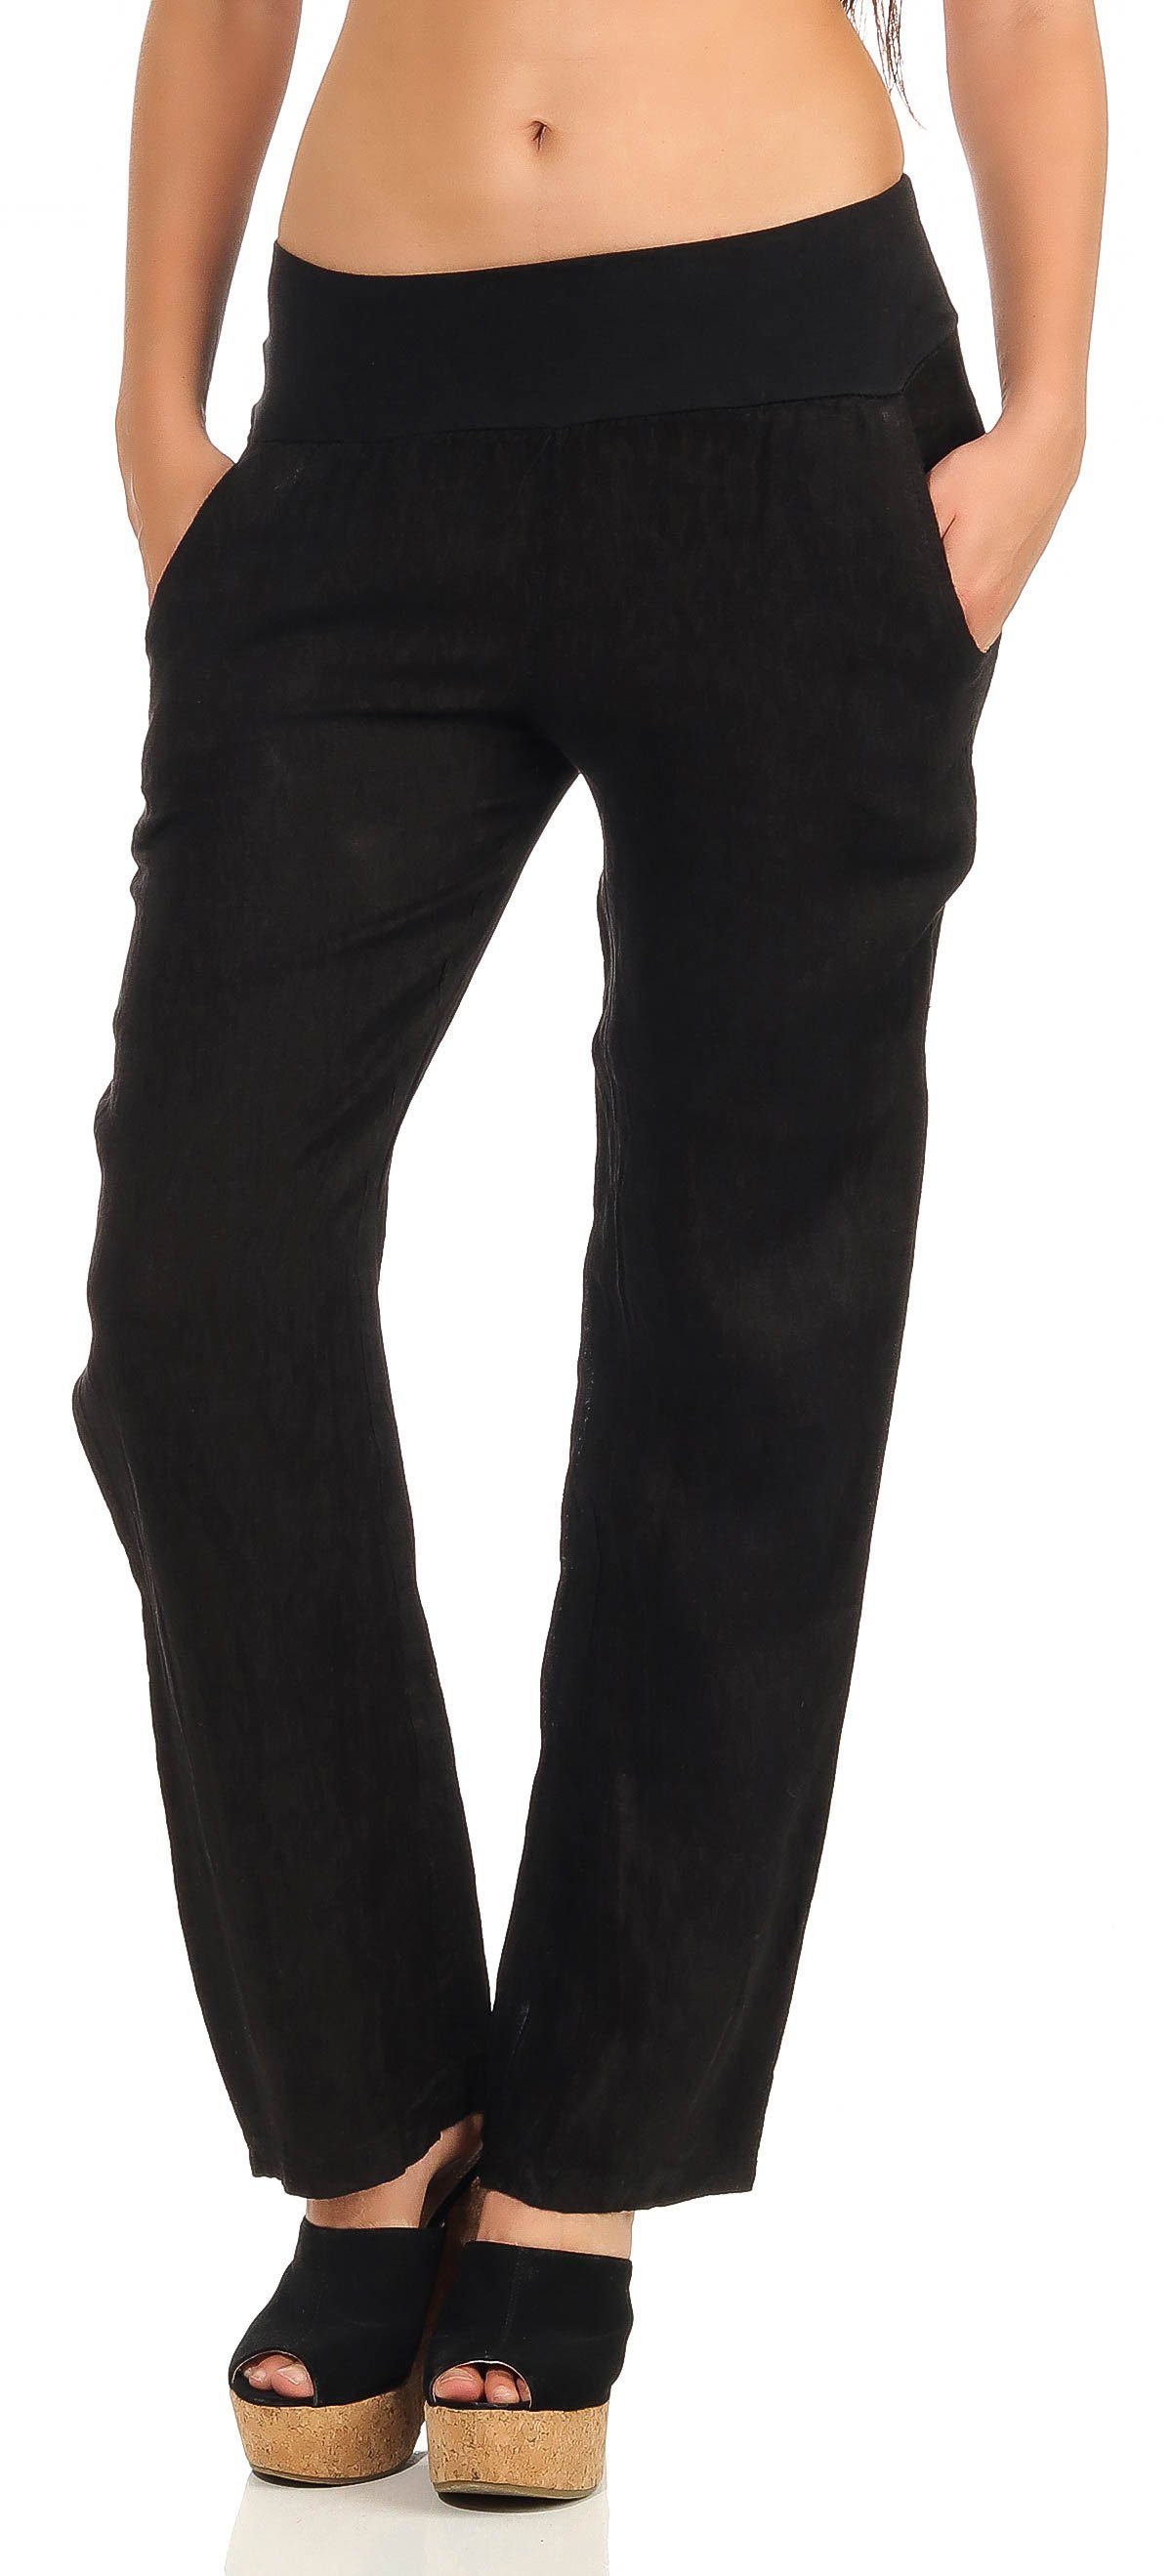 Stoffhose than 7792 leichte Leinenhose malito mit schwarz more elastischem fashion Bund